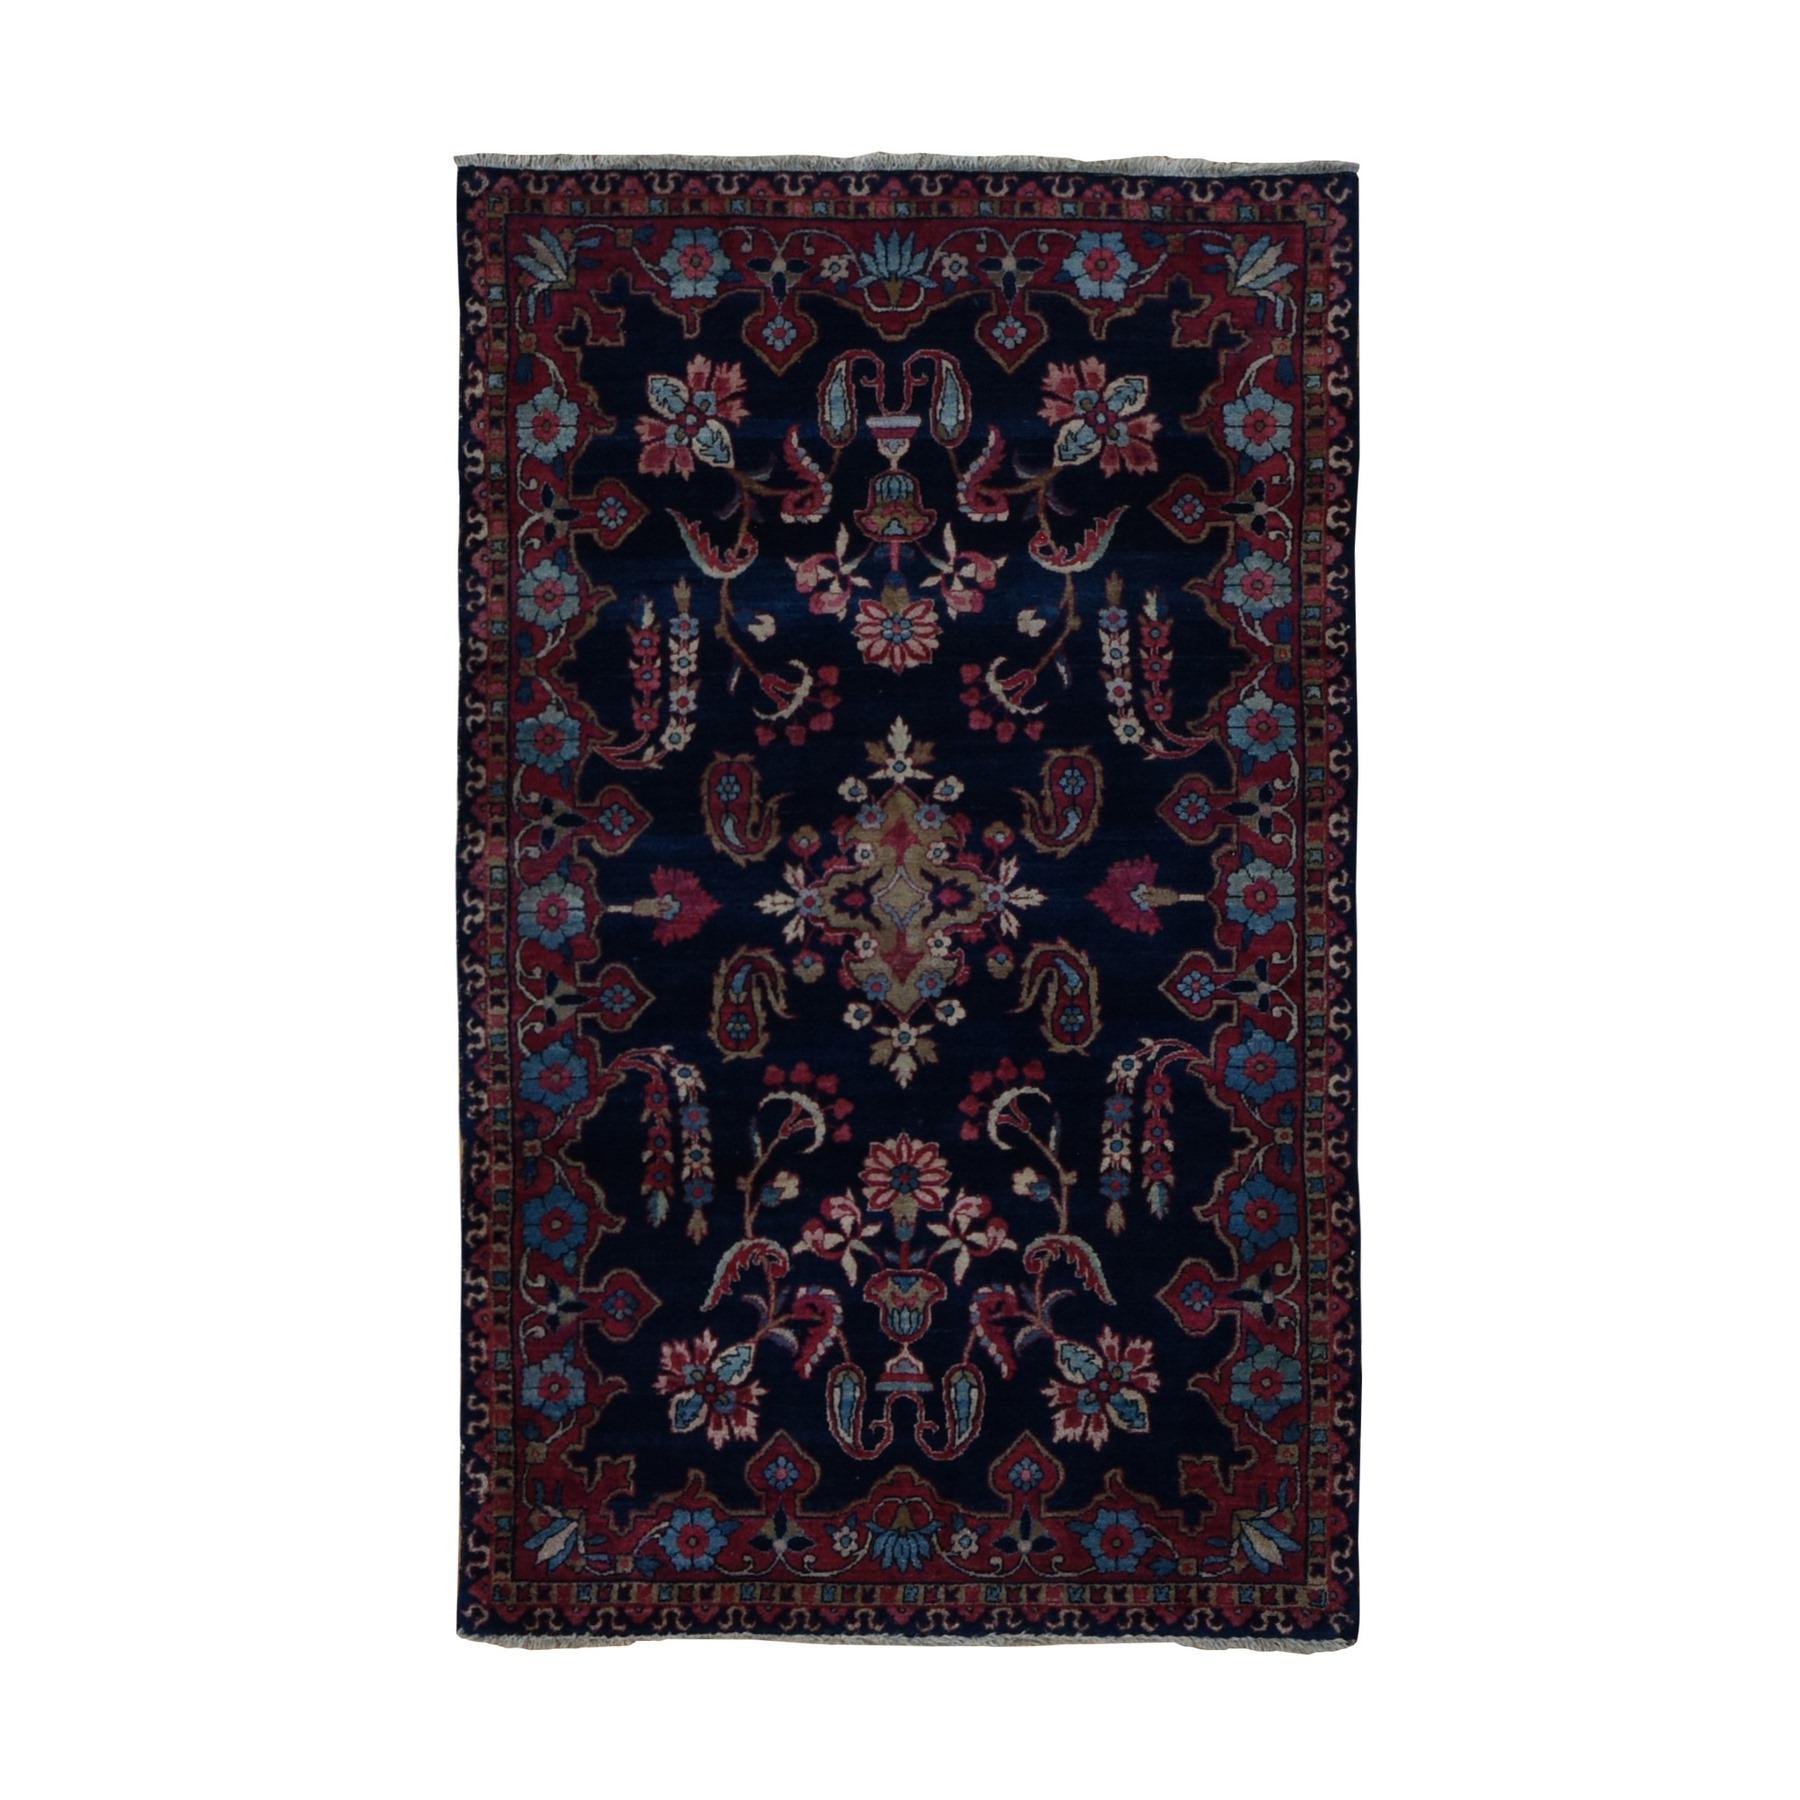 Mitternachtsblauer antiker persischer Sarouk-Teppich aus Wolle in voller Flor 2'10